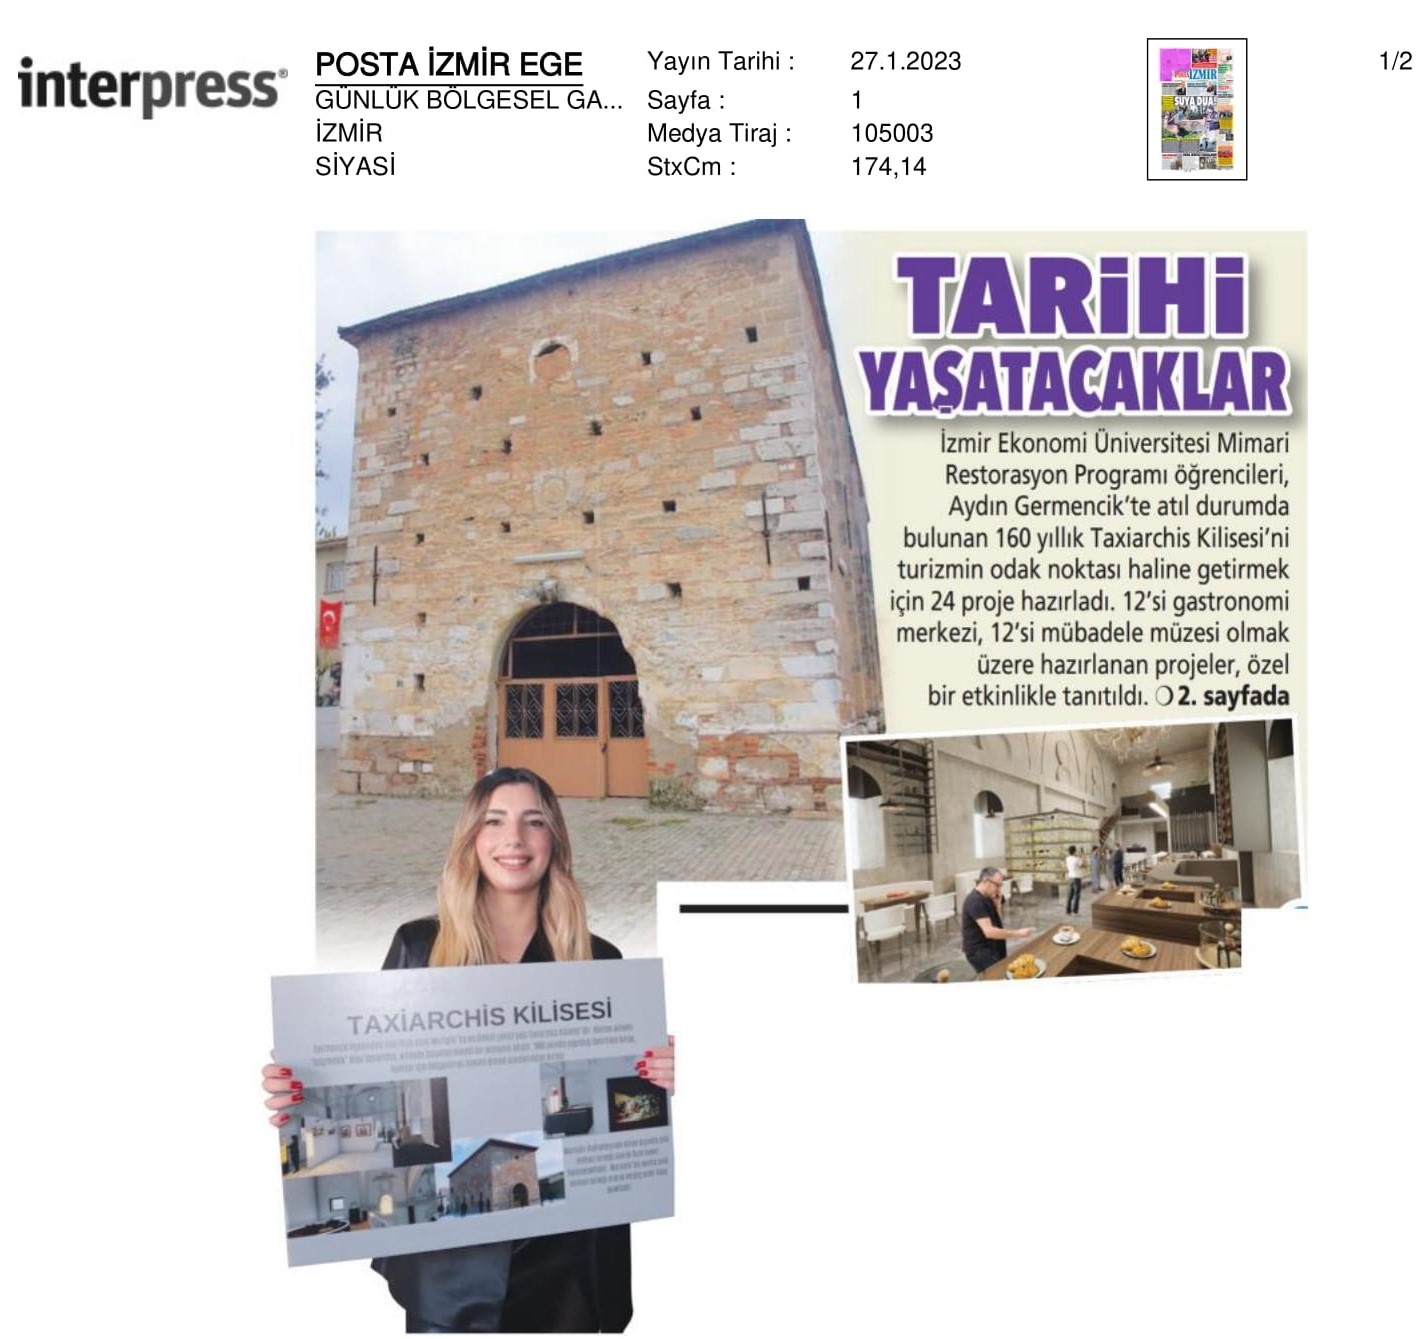 İzmir’den Aydın’a ‘Tarihi Yaşatacak’ 24 Proje